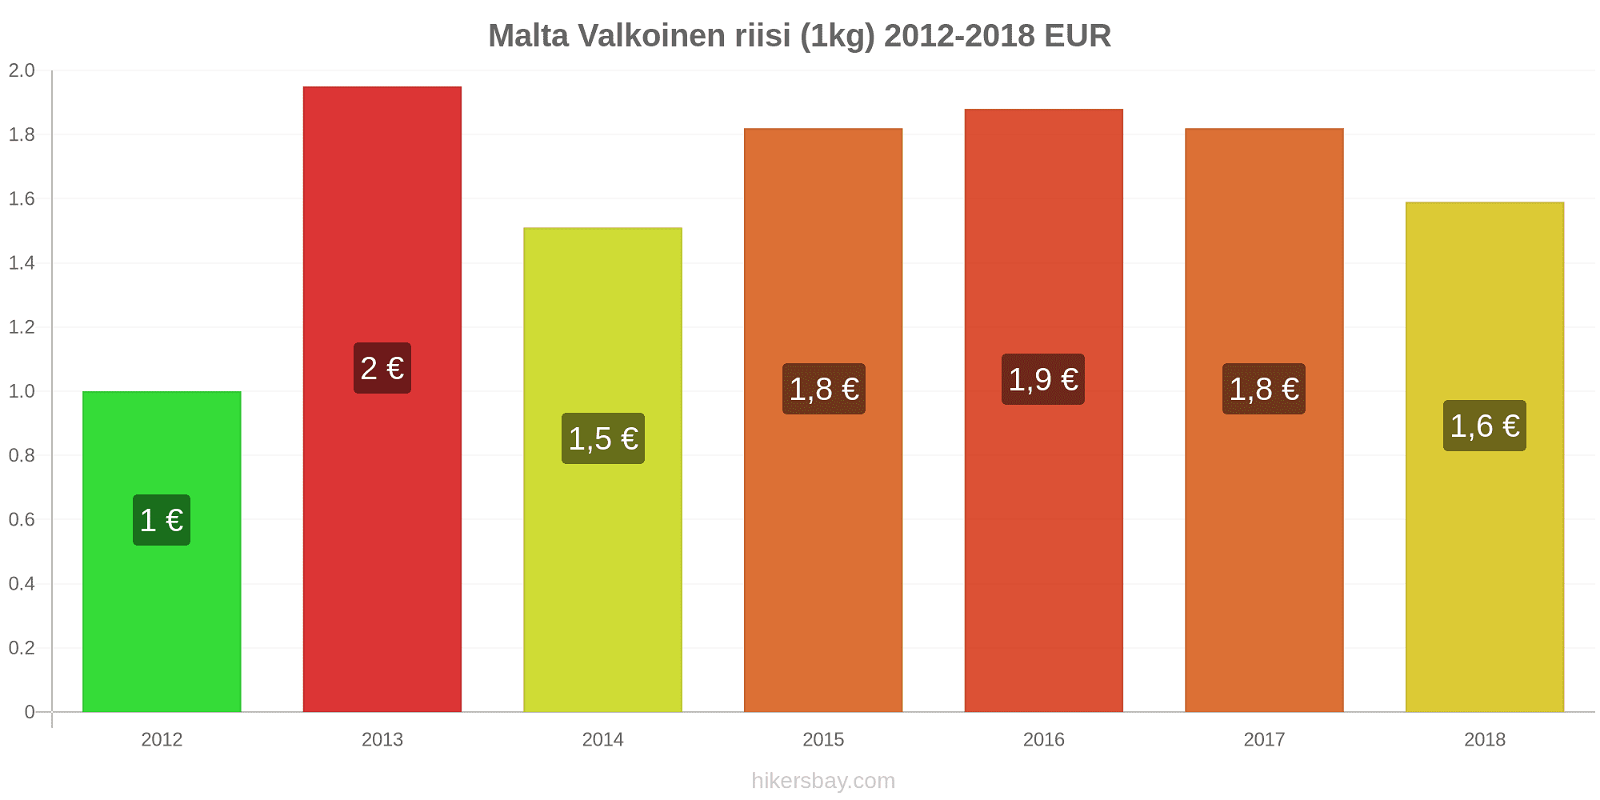 Malta hintojen muutokset Valkoinen riisi (1kg) hikersbay.com